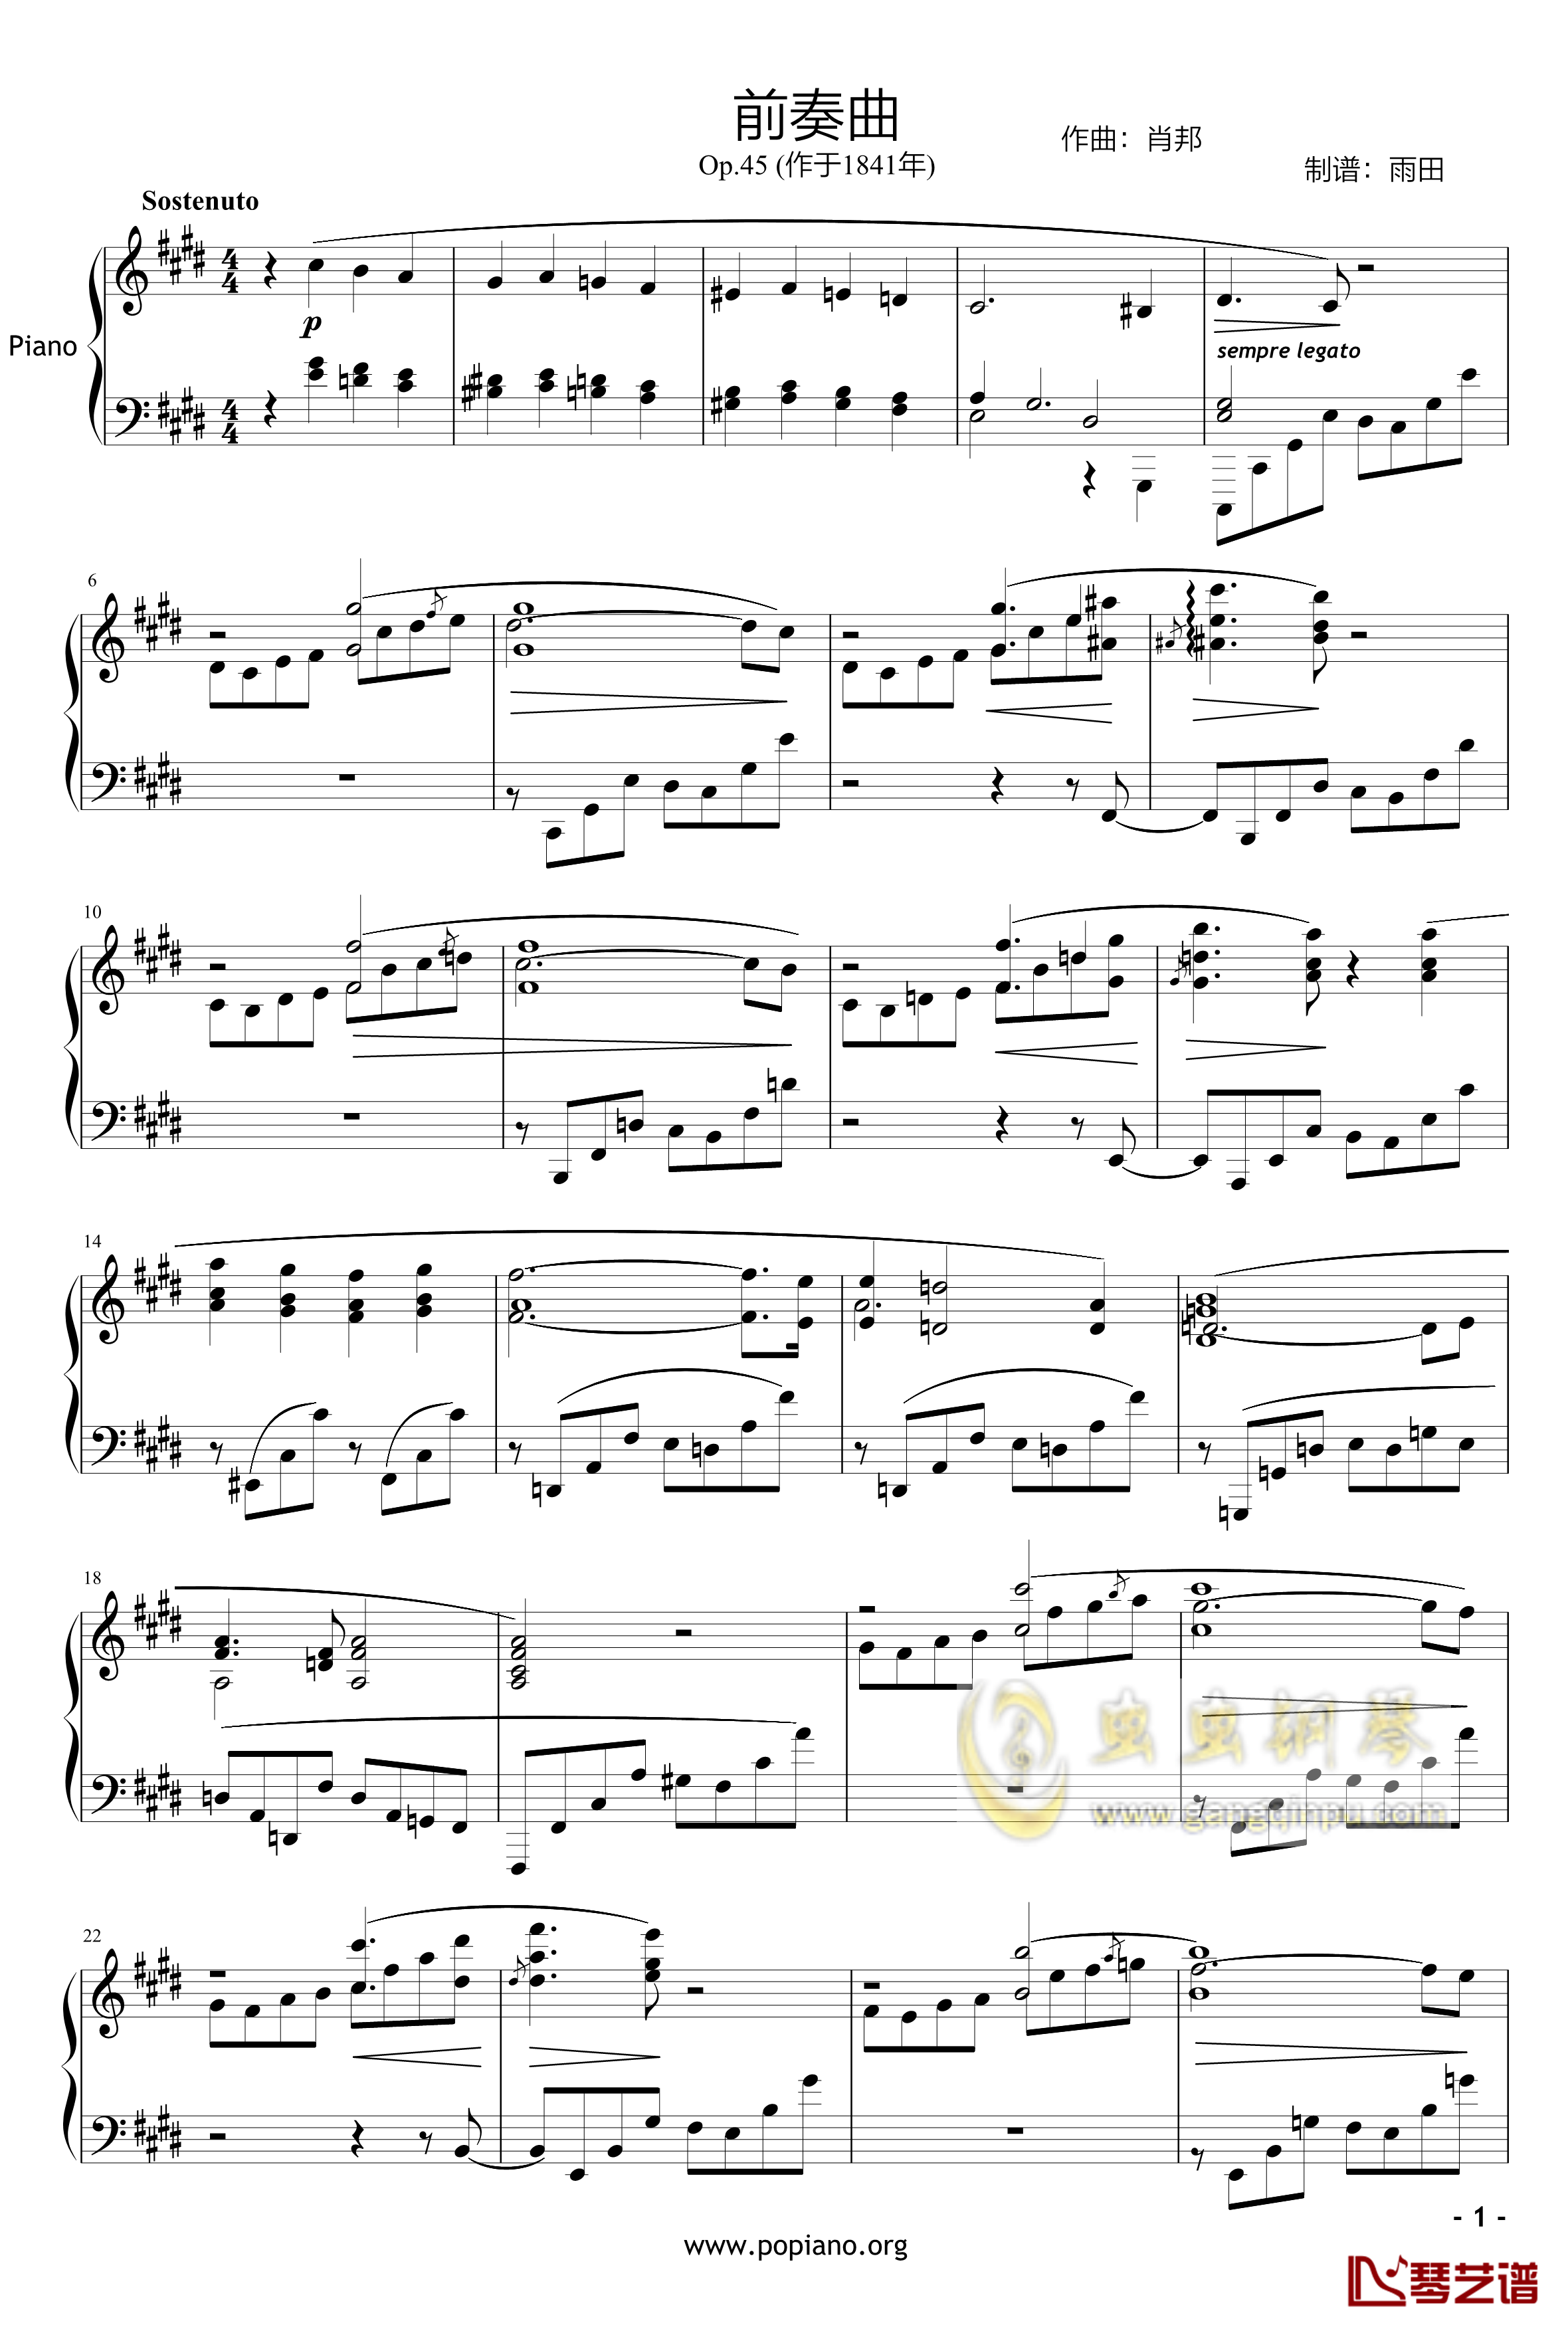 升c小调前奏曲 Op.45钢琴谱-雨田版-肖邦-chopin1